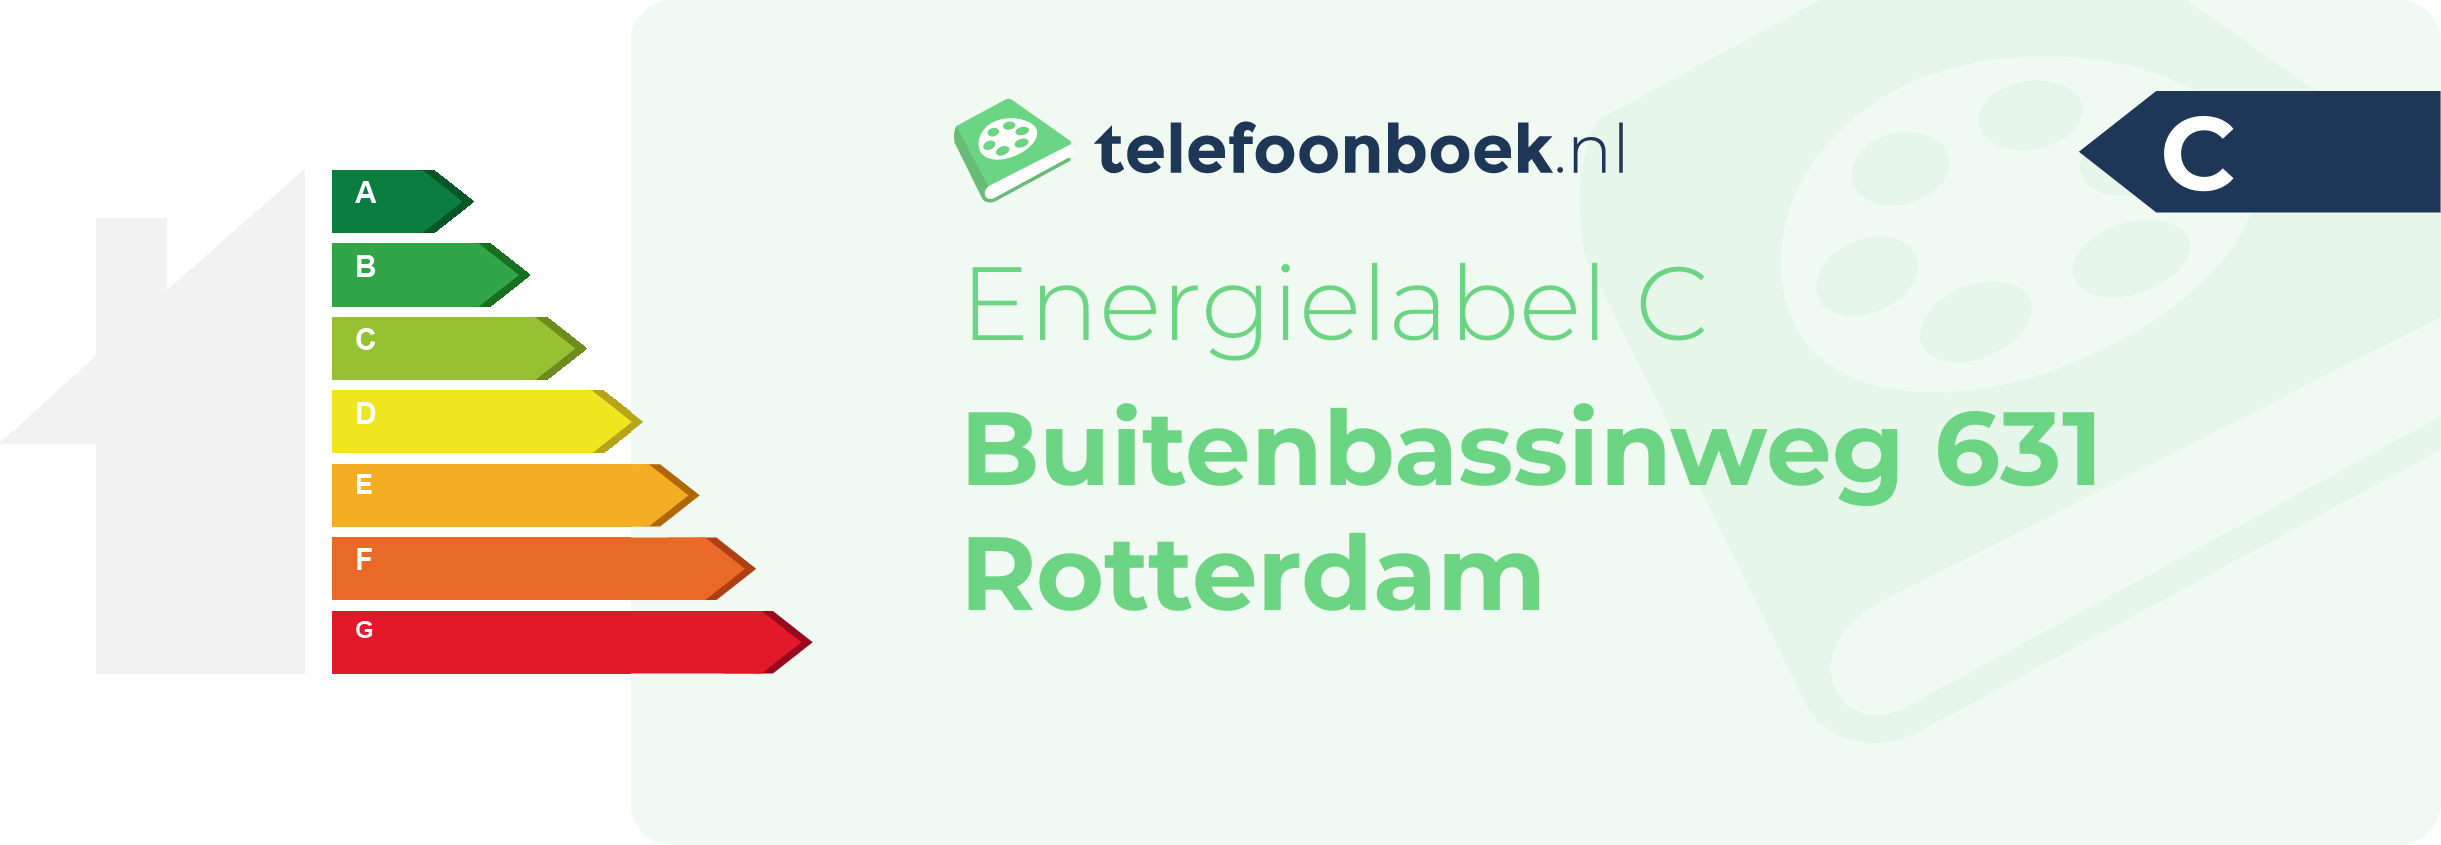 Energielabel Buitenbassinweg 631 Rotterdam